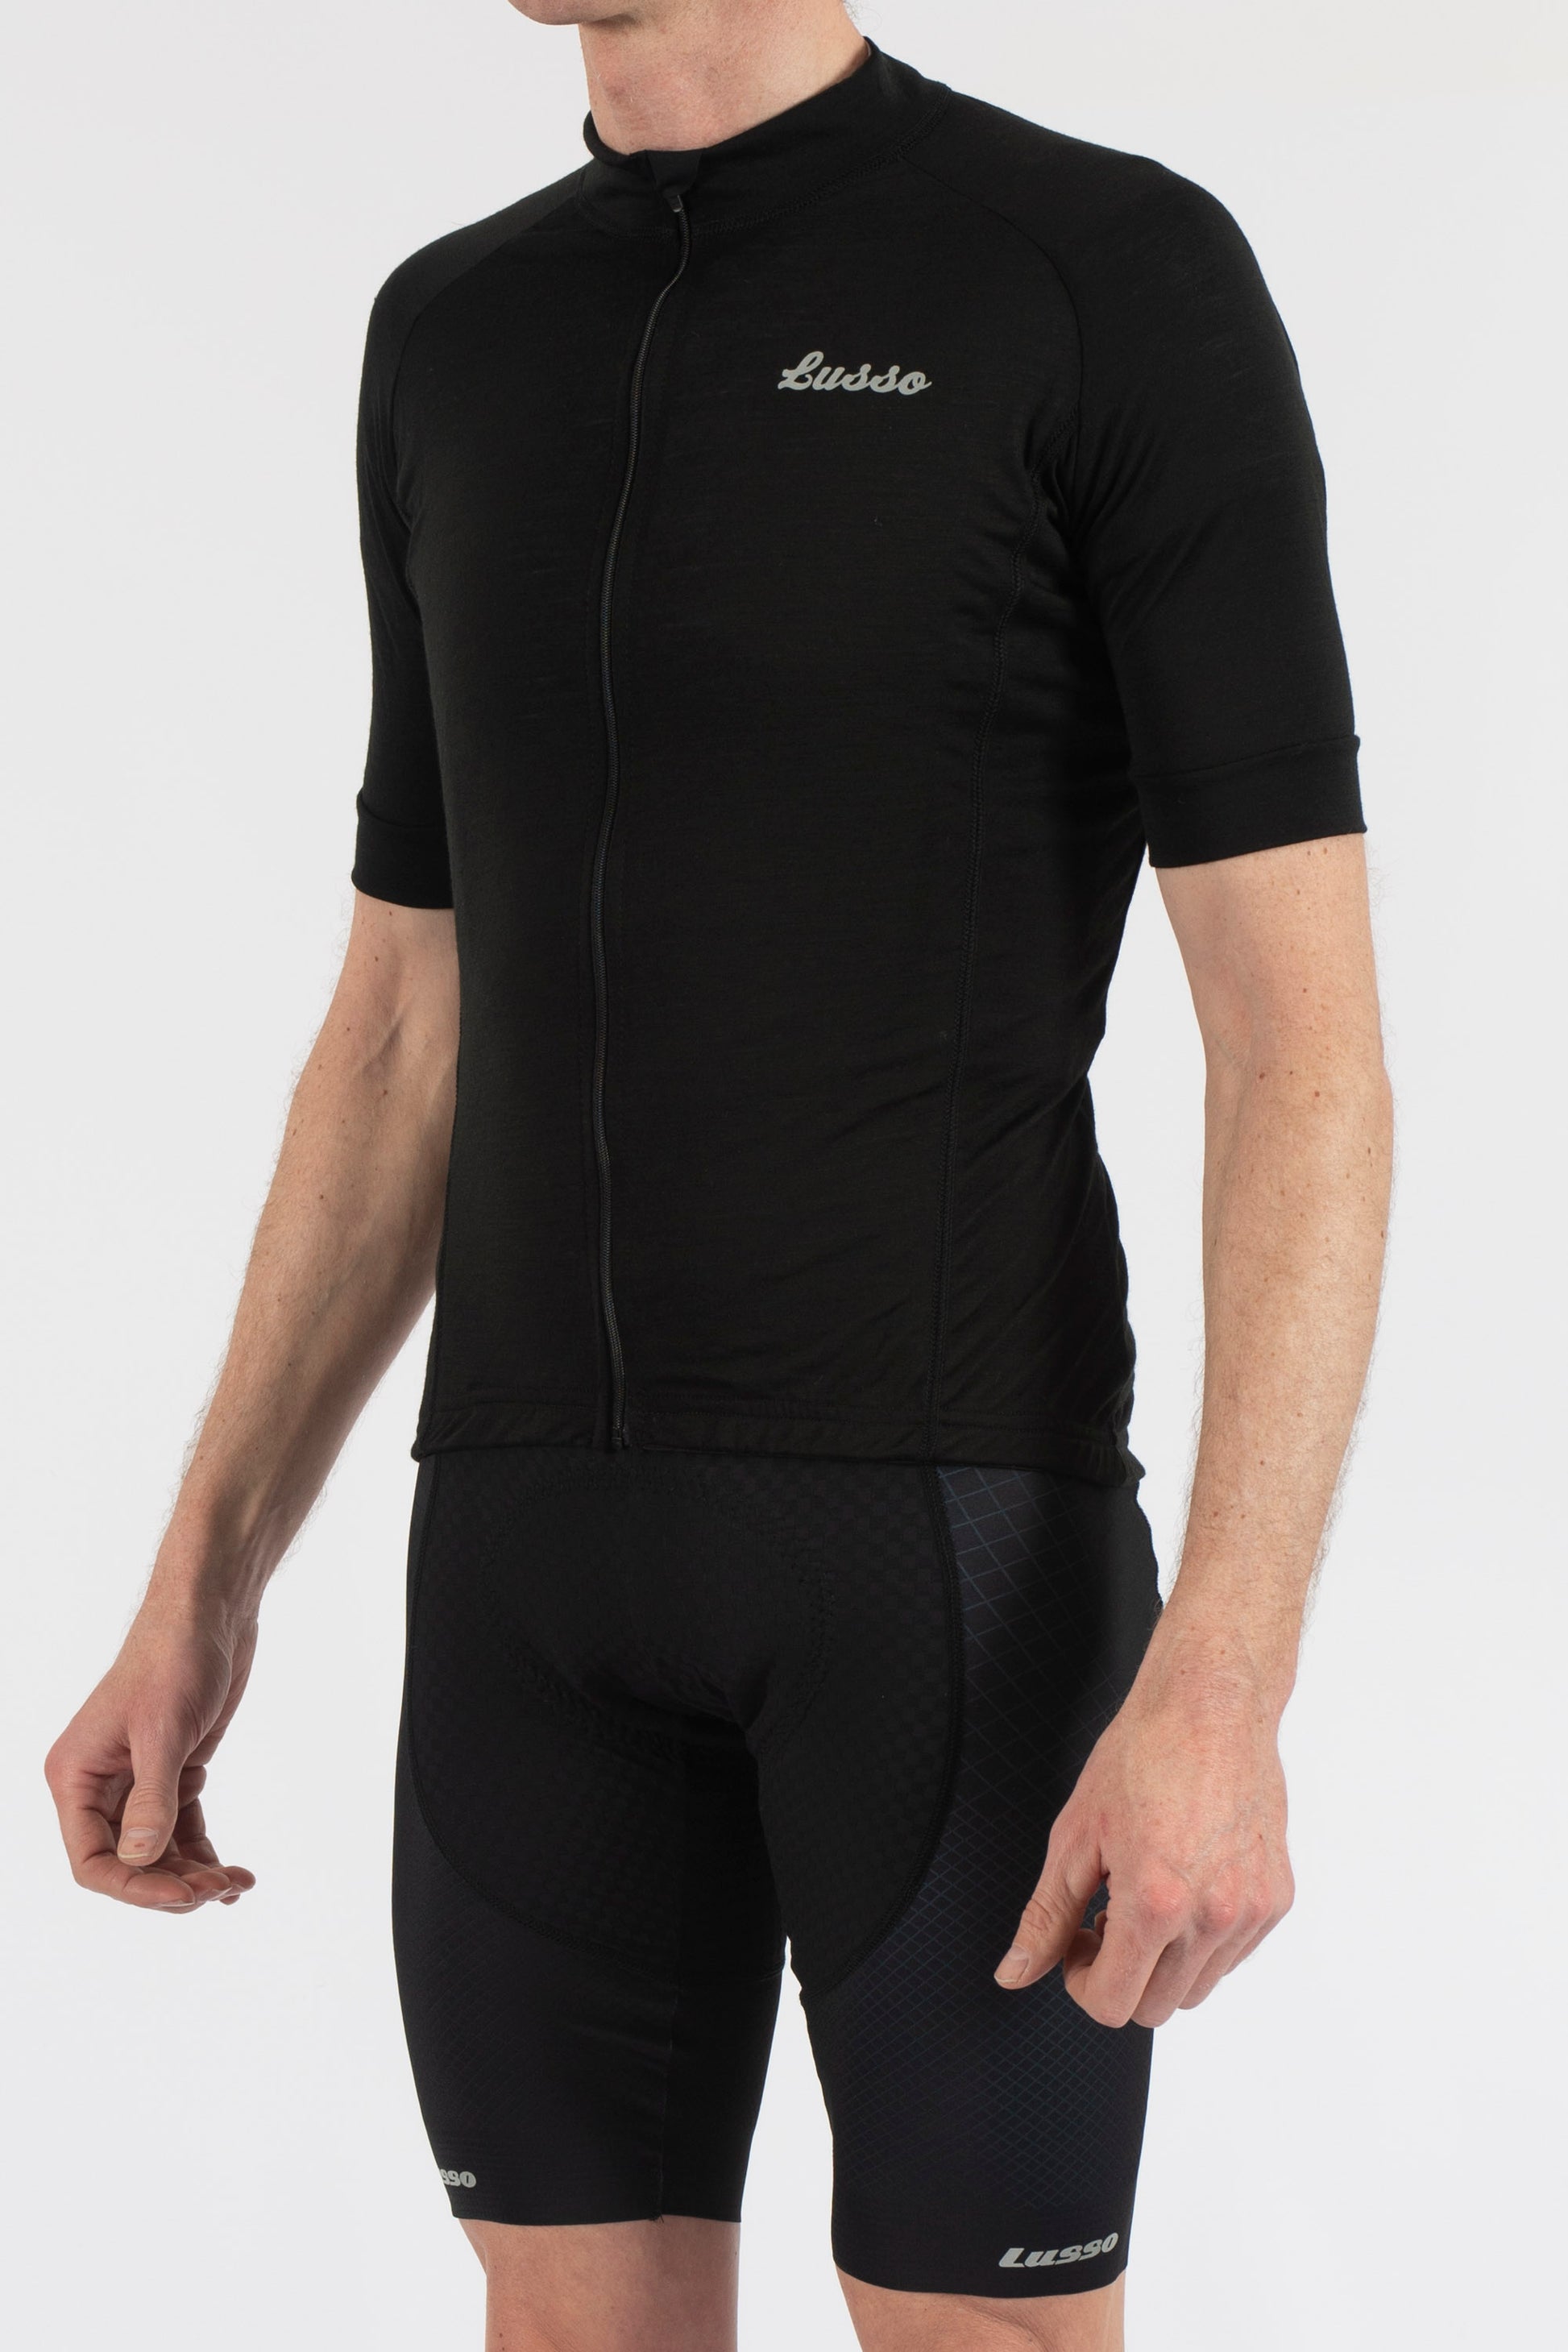 Merino Black Short Sleeve Jersey - Lusso Cycle Wear